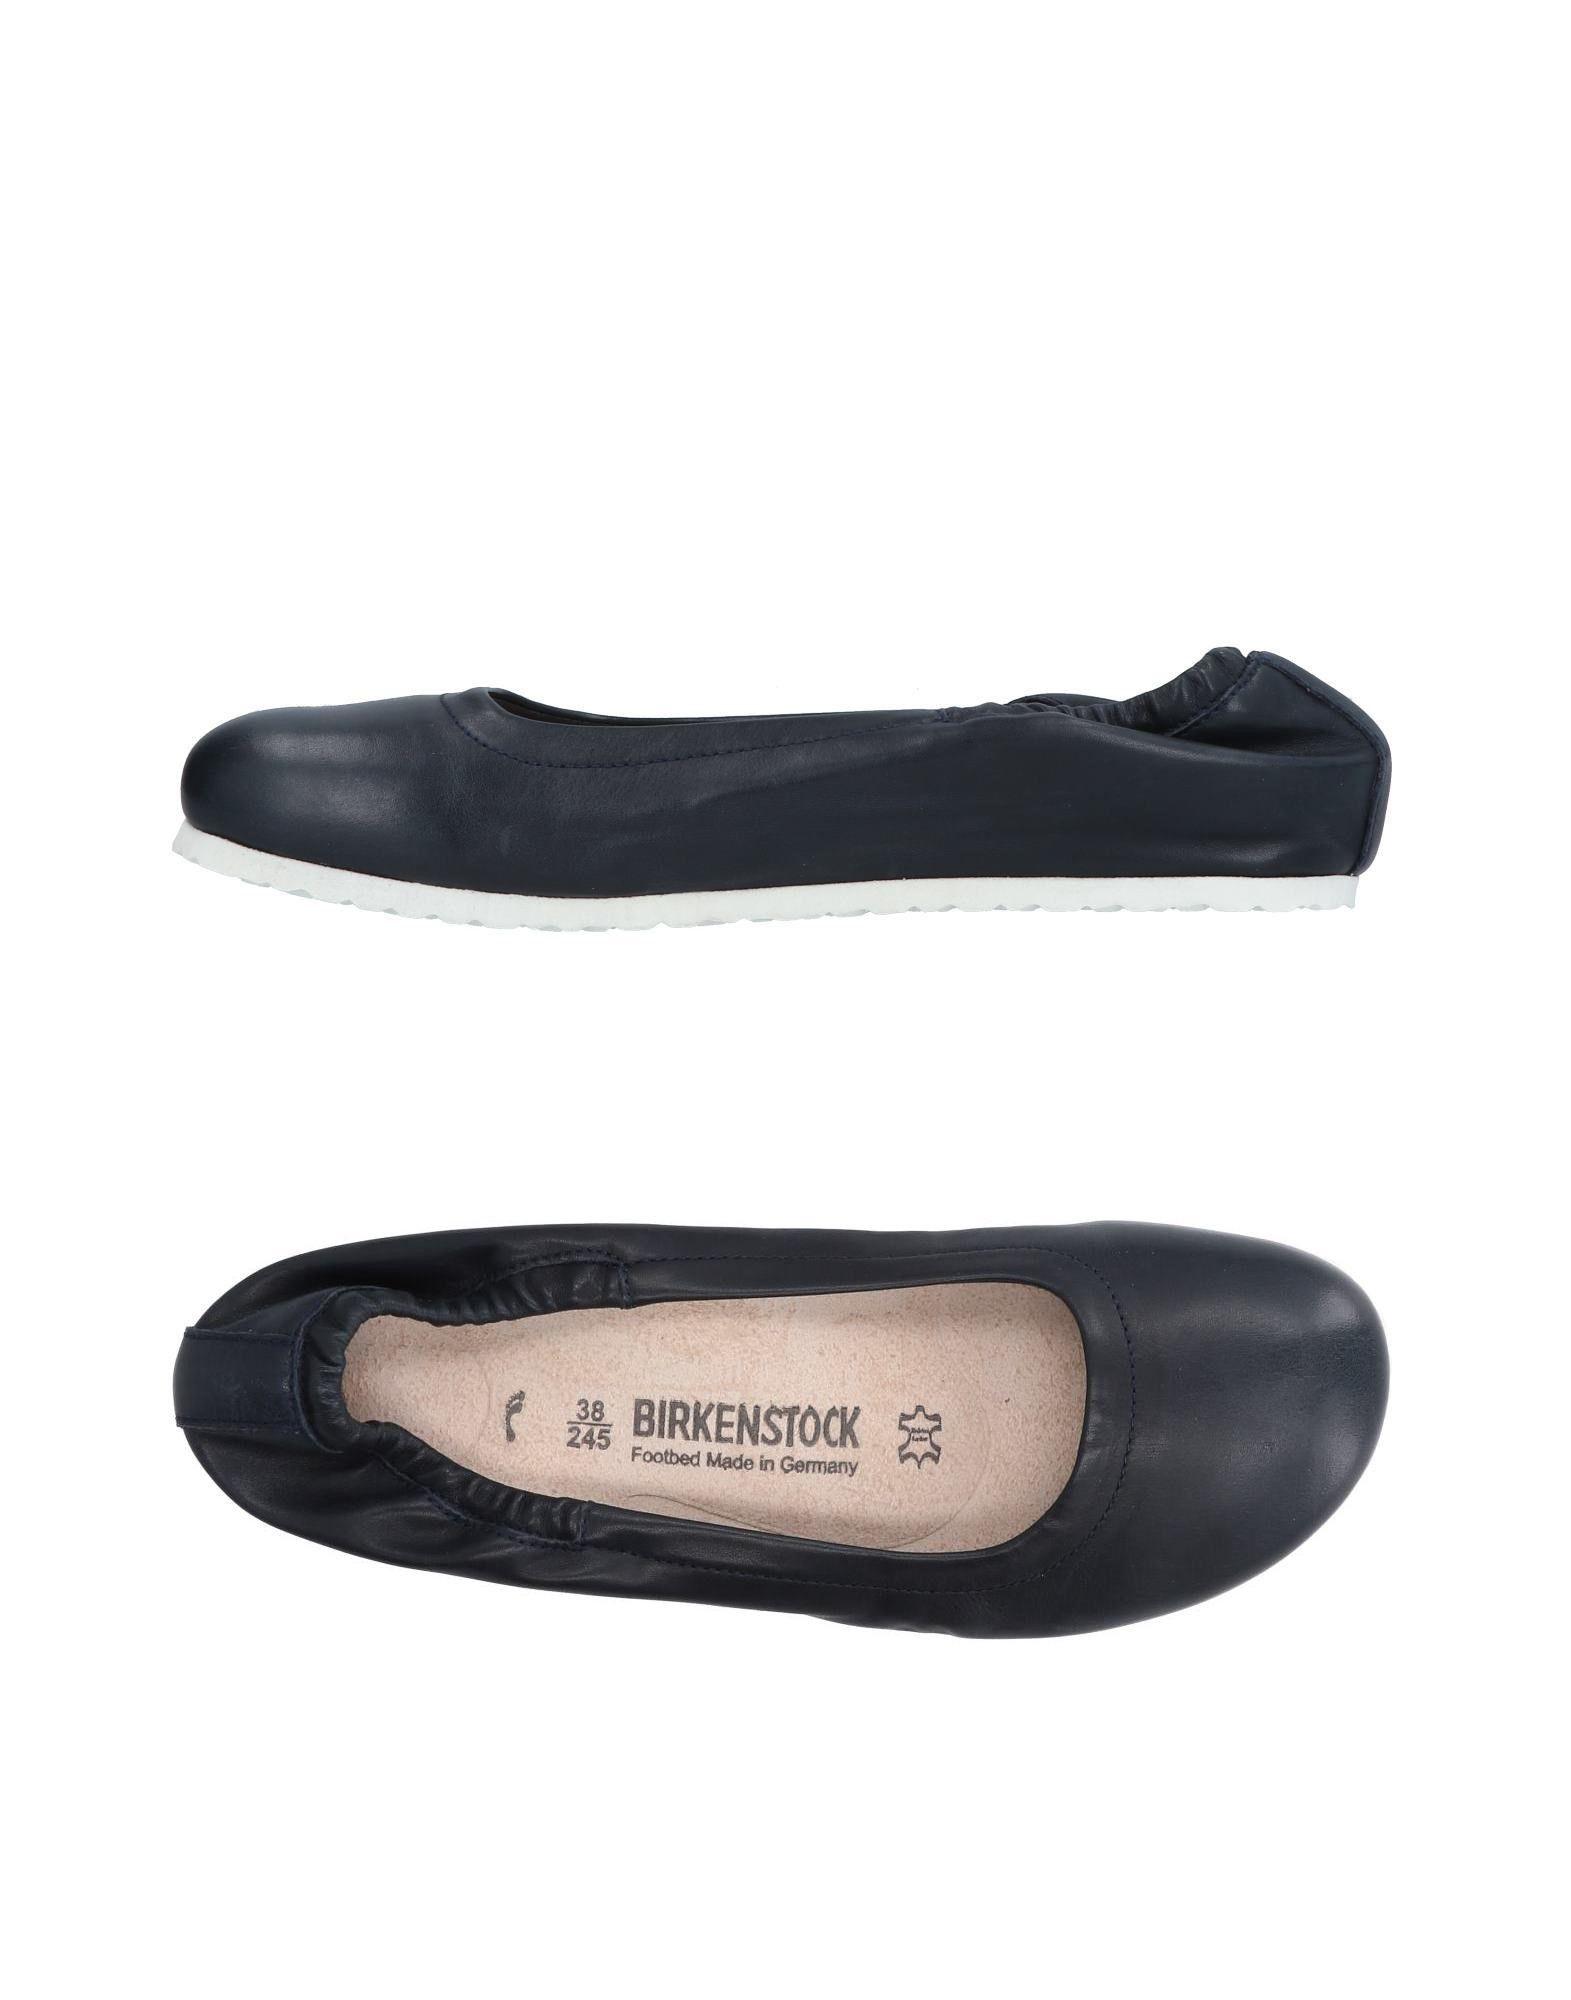 birkenstock ballerina shoes